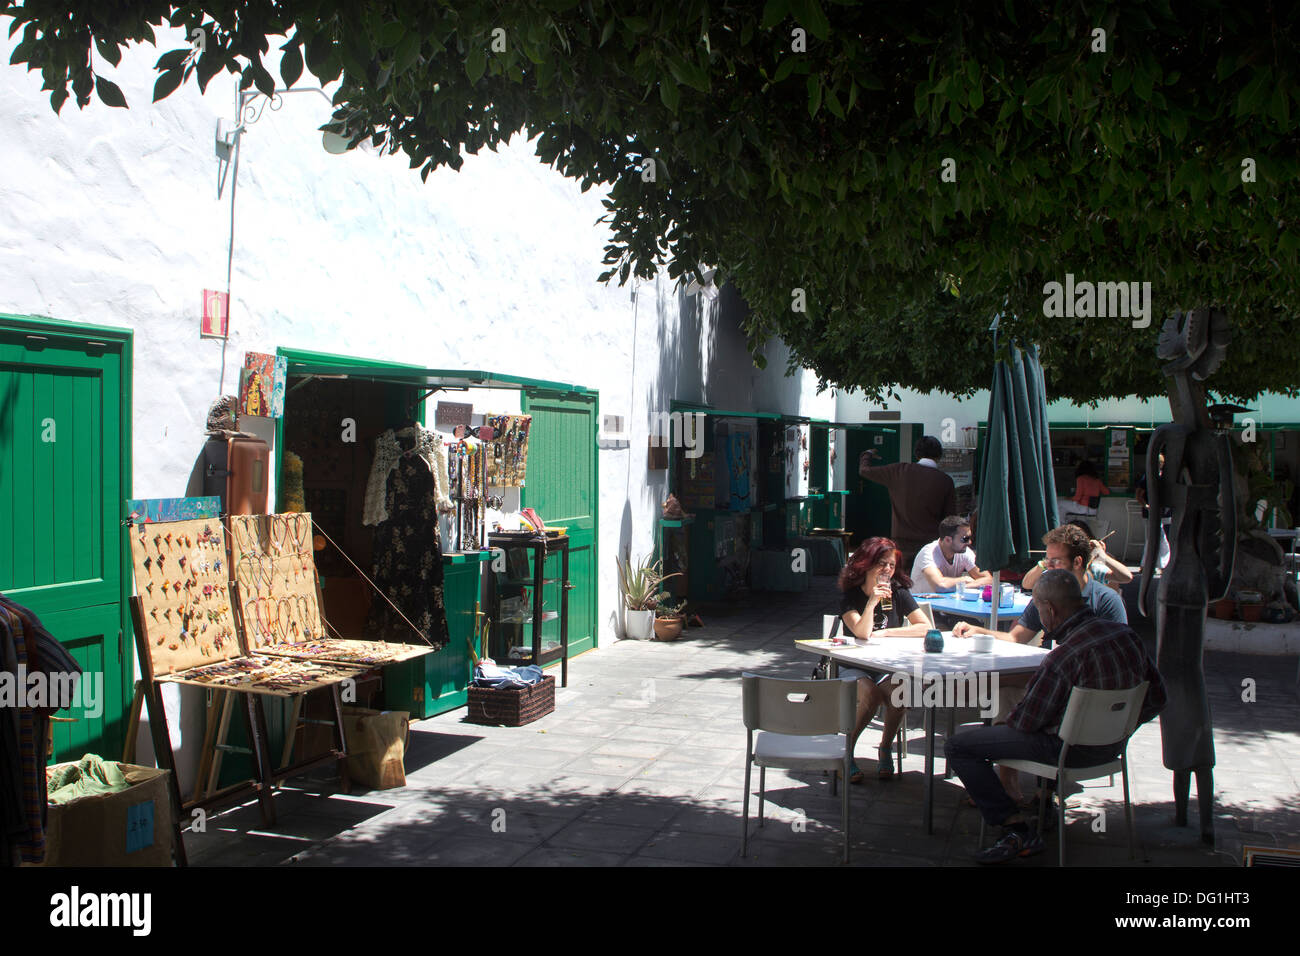 Courtyard, La Recova Market area, Arrecife, Lanzarote, Canary Islands Stock Photo